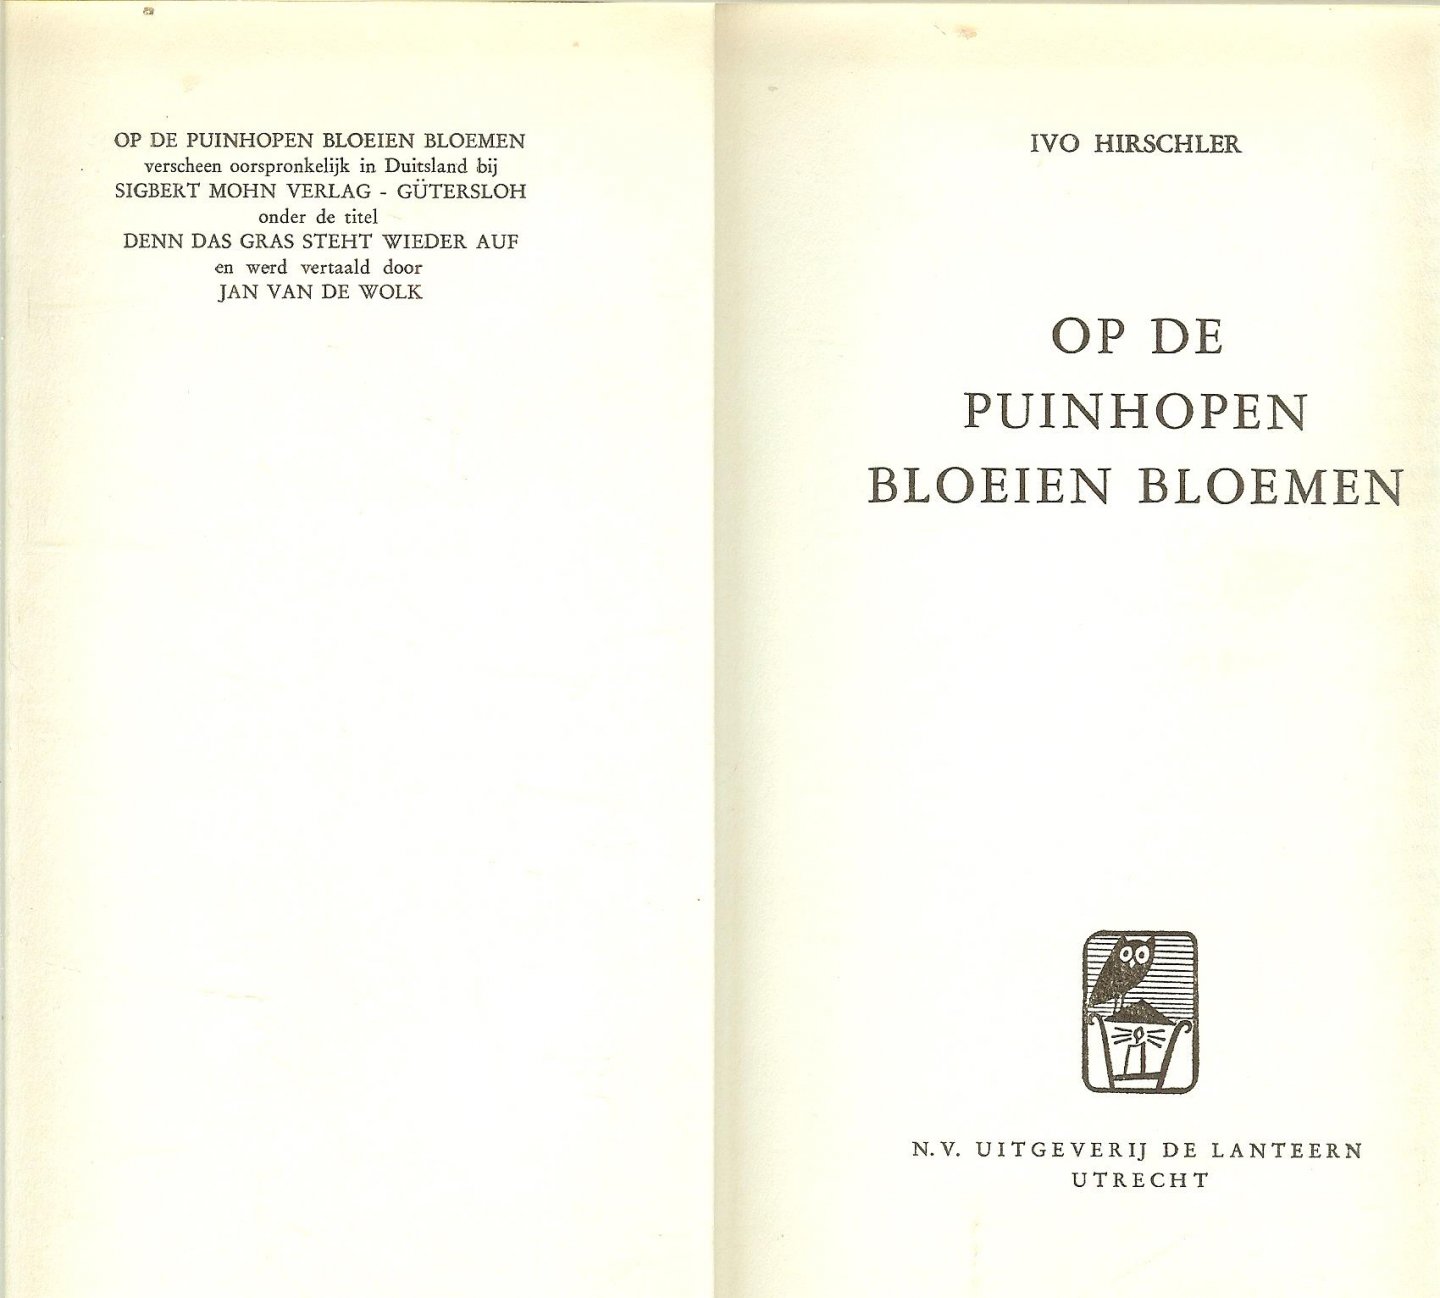 Hirschler Ivo   en werd vertaald door Jan van de wolk - Op de Puinhopen Bloeien de Bloemen